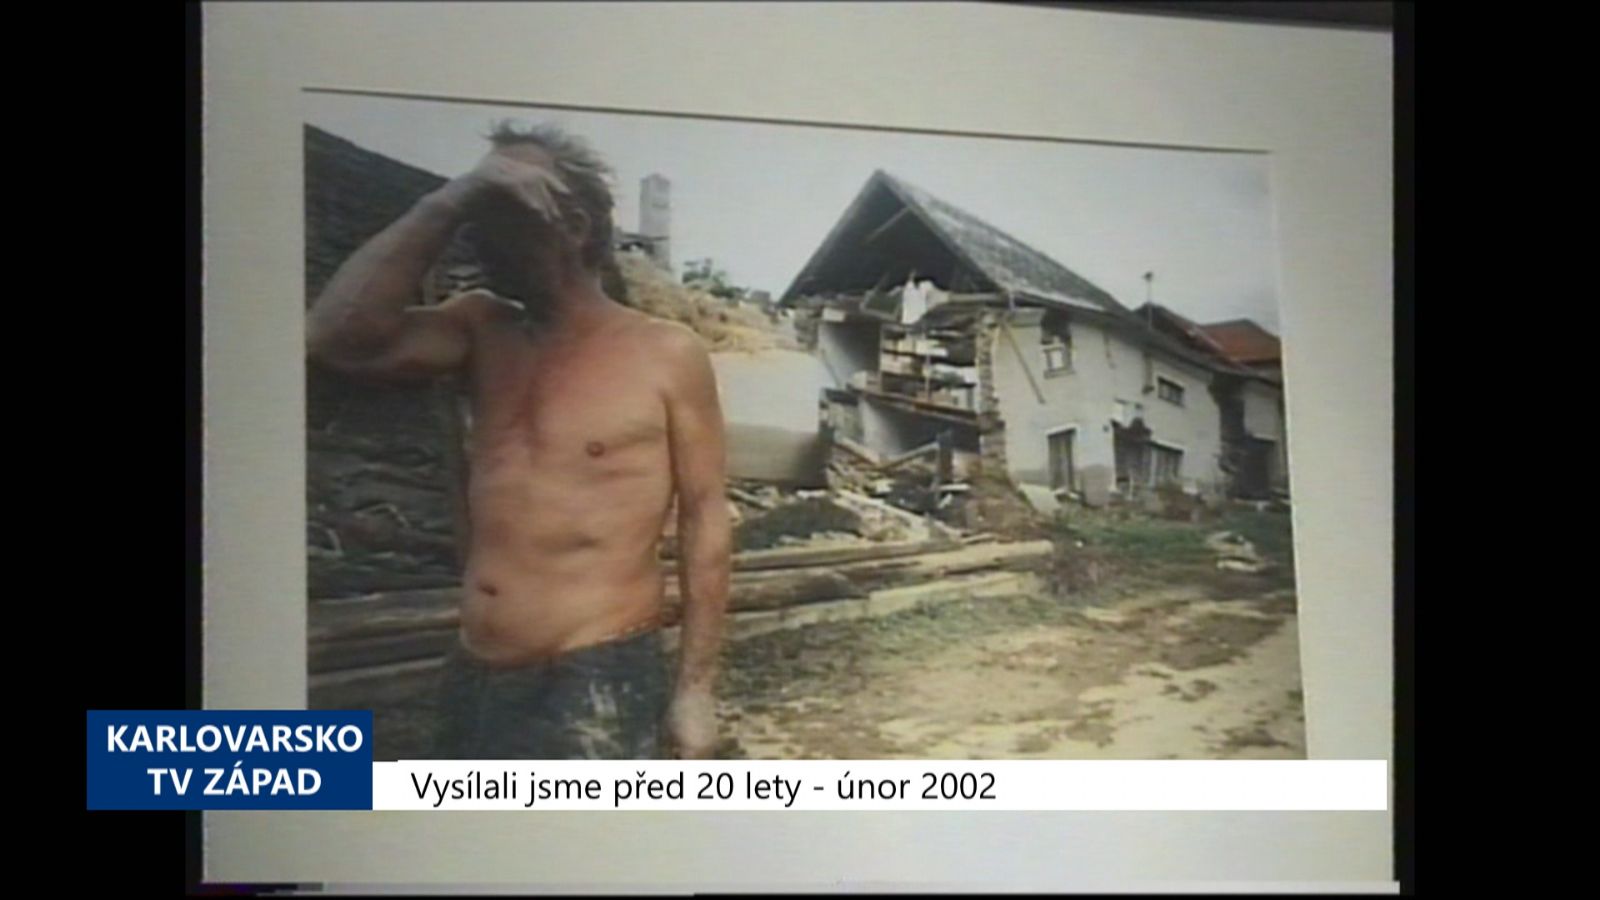 2002 – Cheb: V Galerii 4 se vystavují humanitární fotografie (TV Západ)